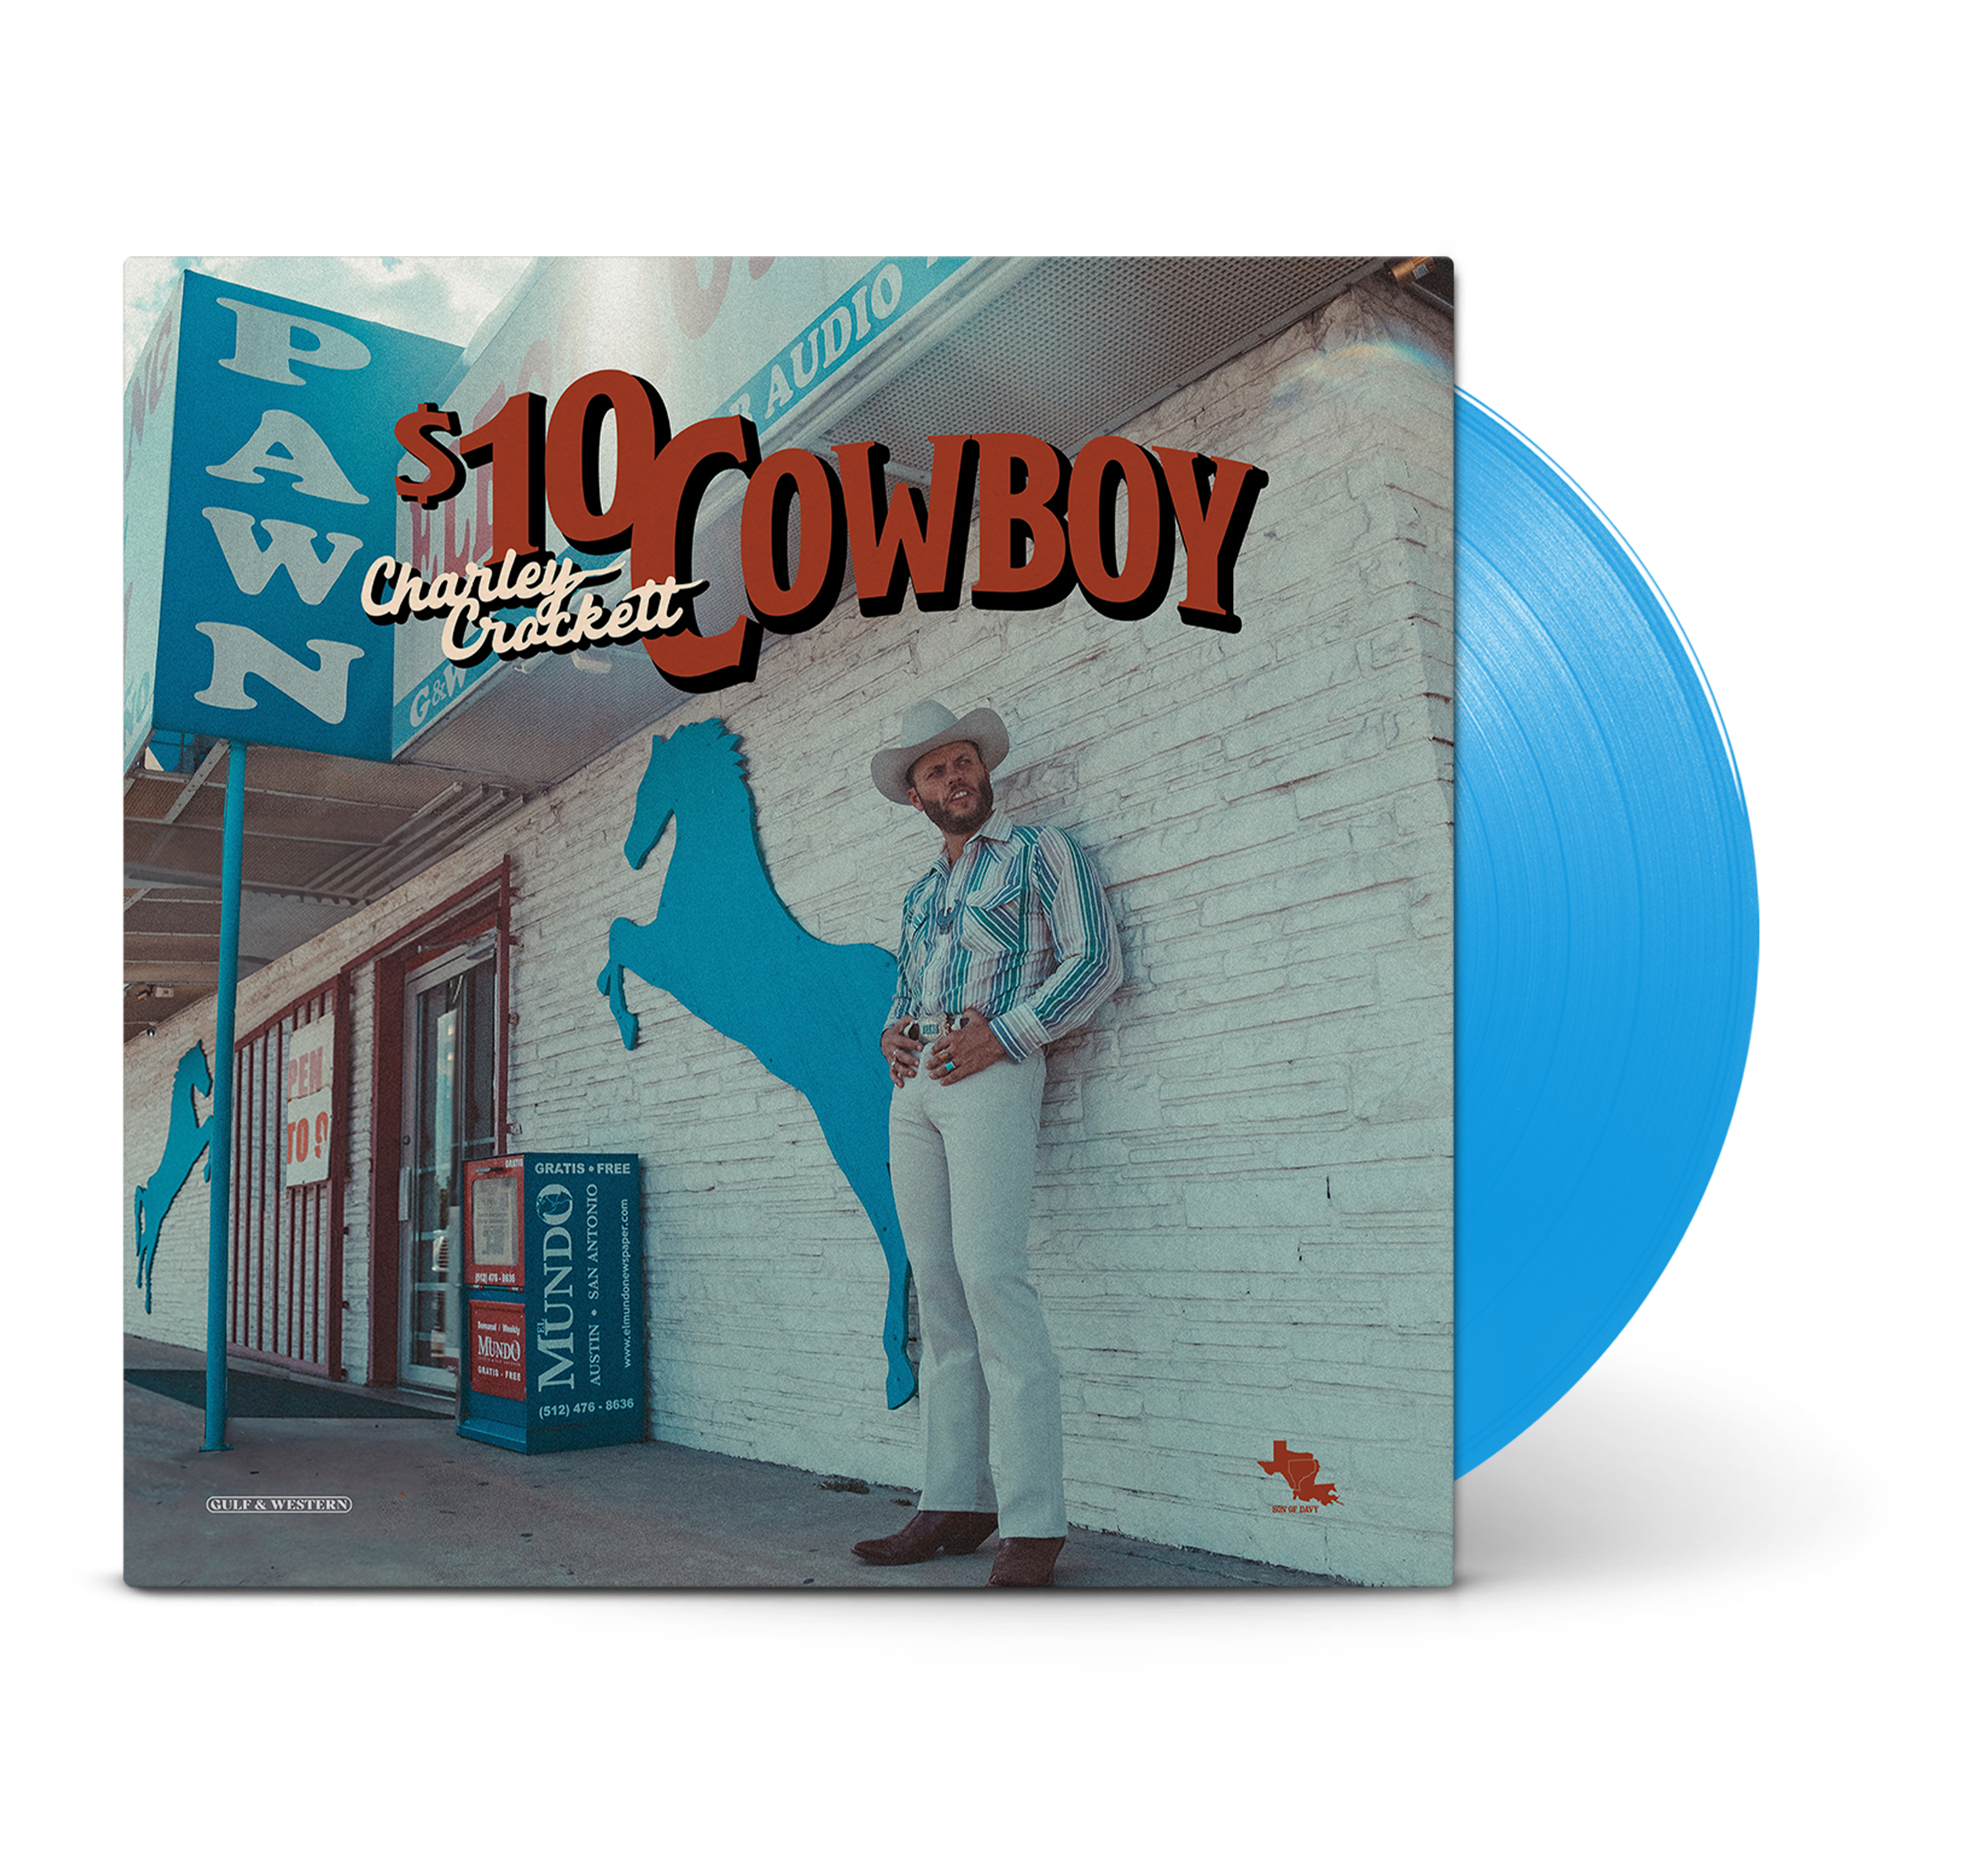 Charley Crockett- $10 Cowboy (Indie Exclusive) (PREORDER)